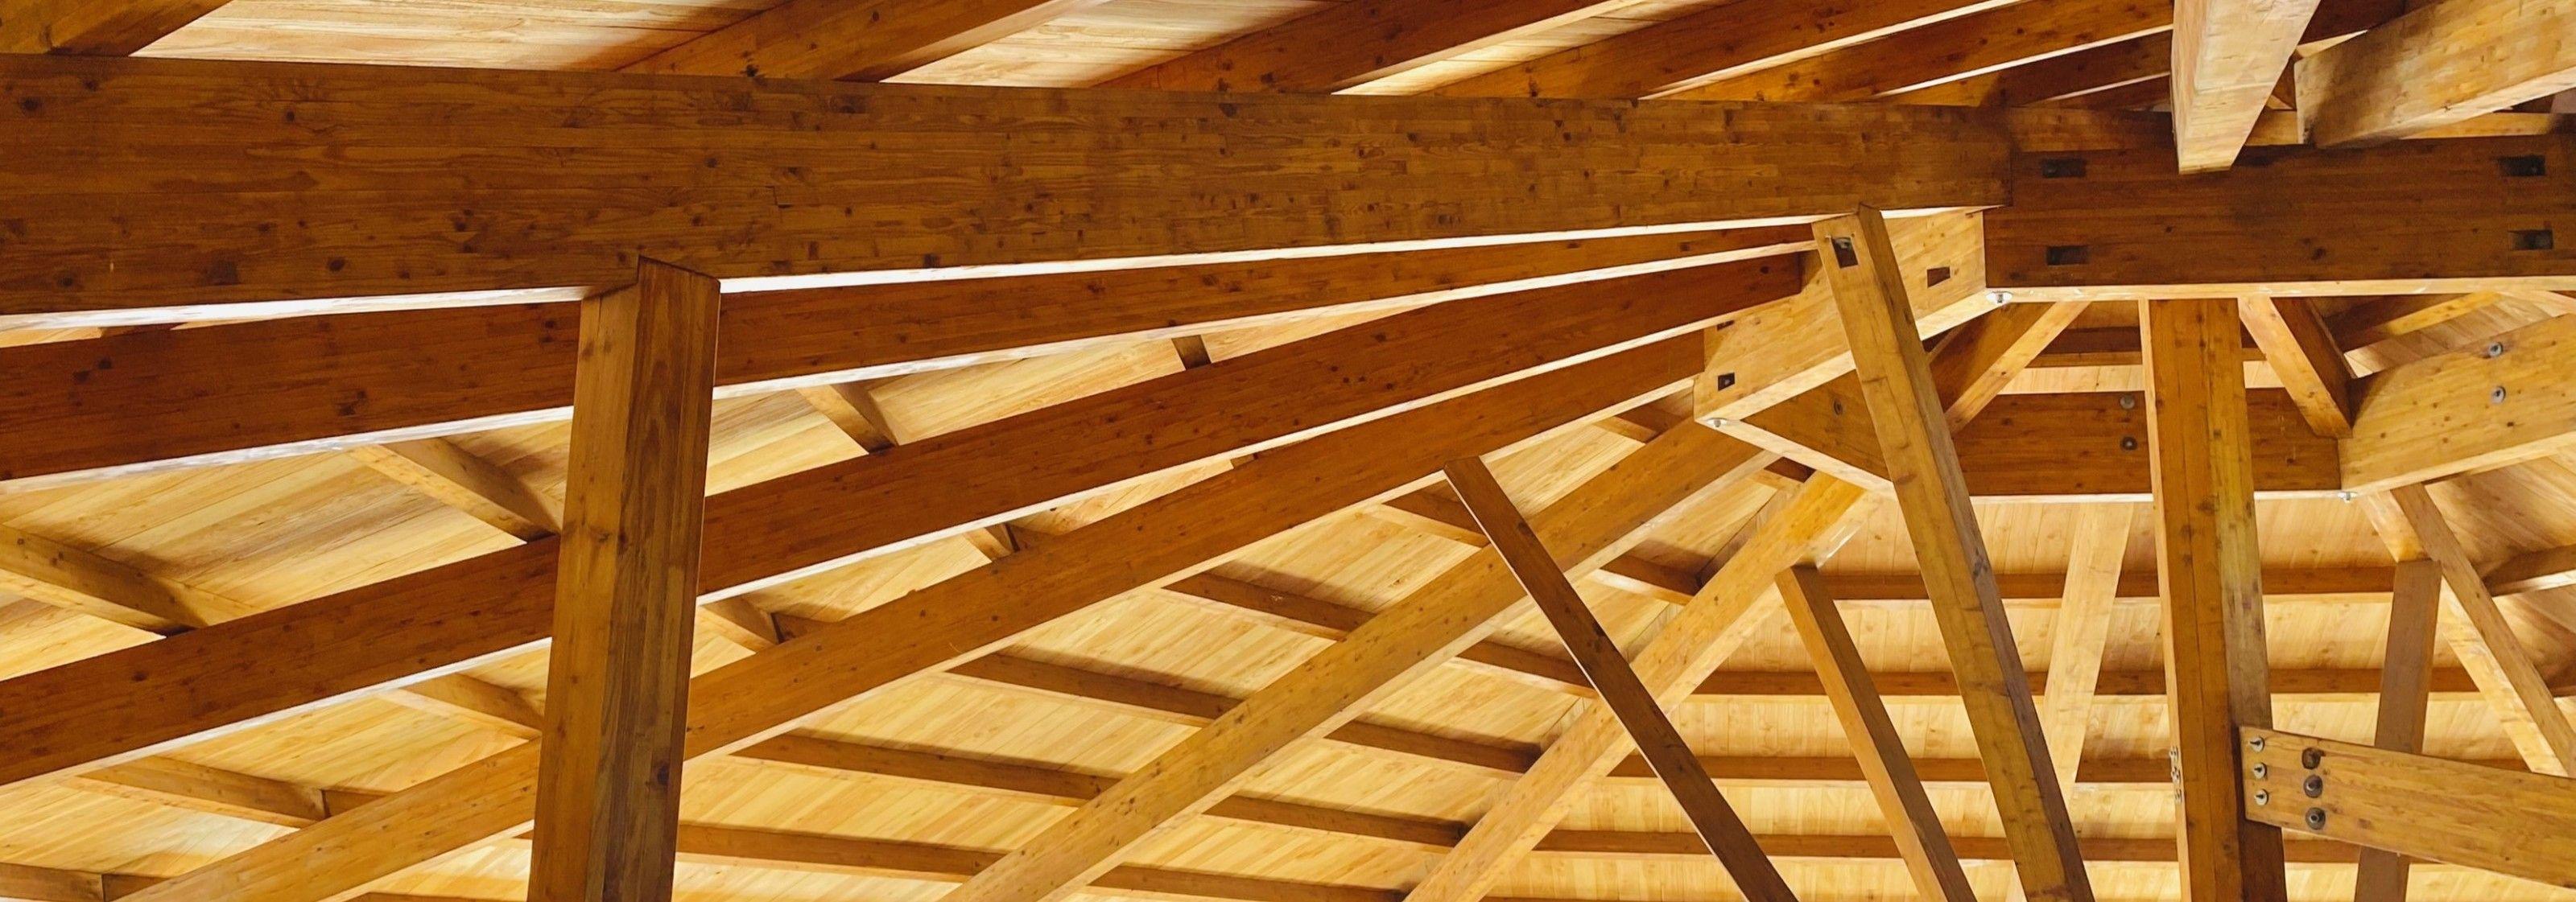 Holz Dachkonstruktion